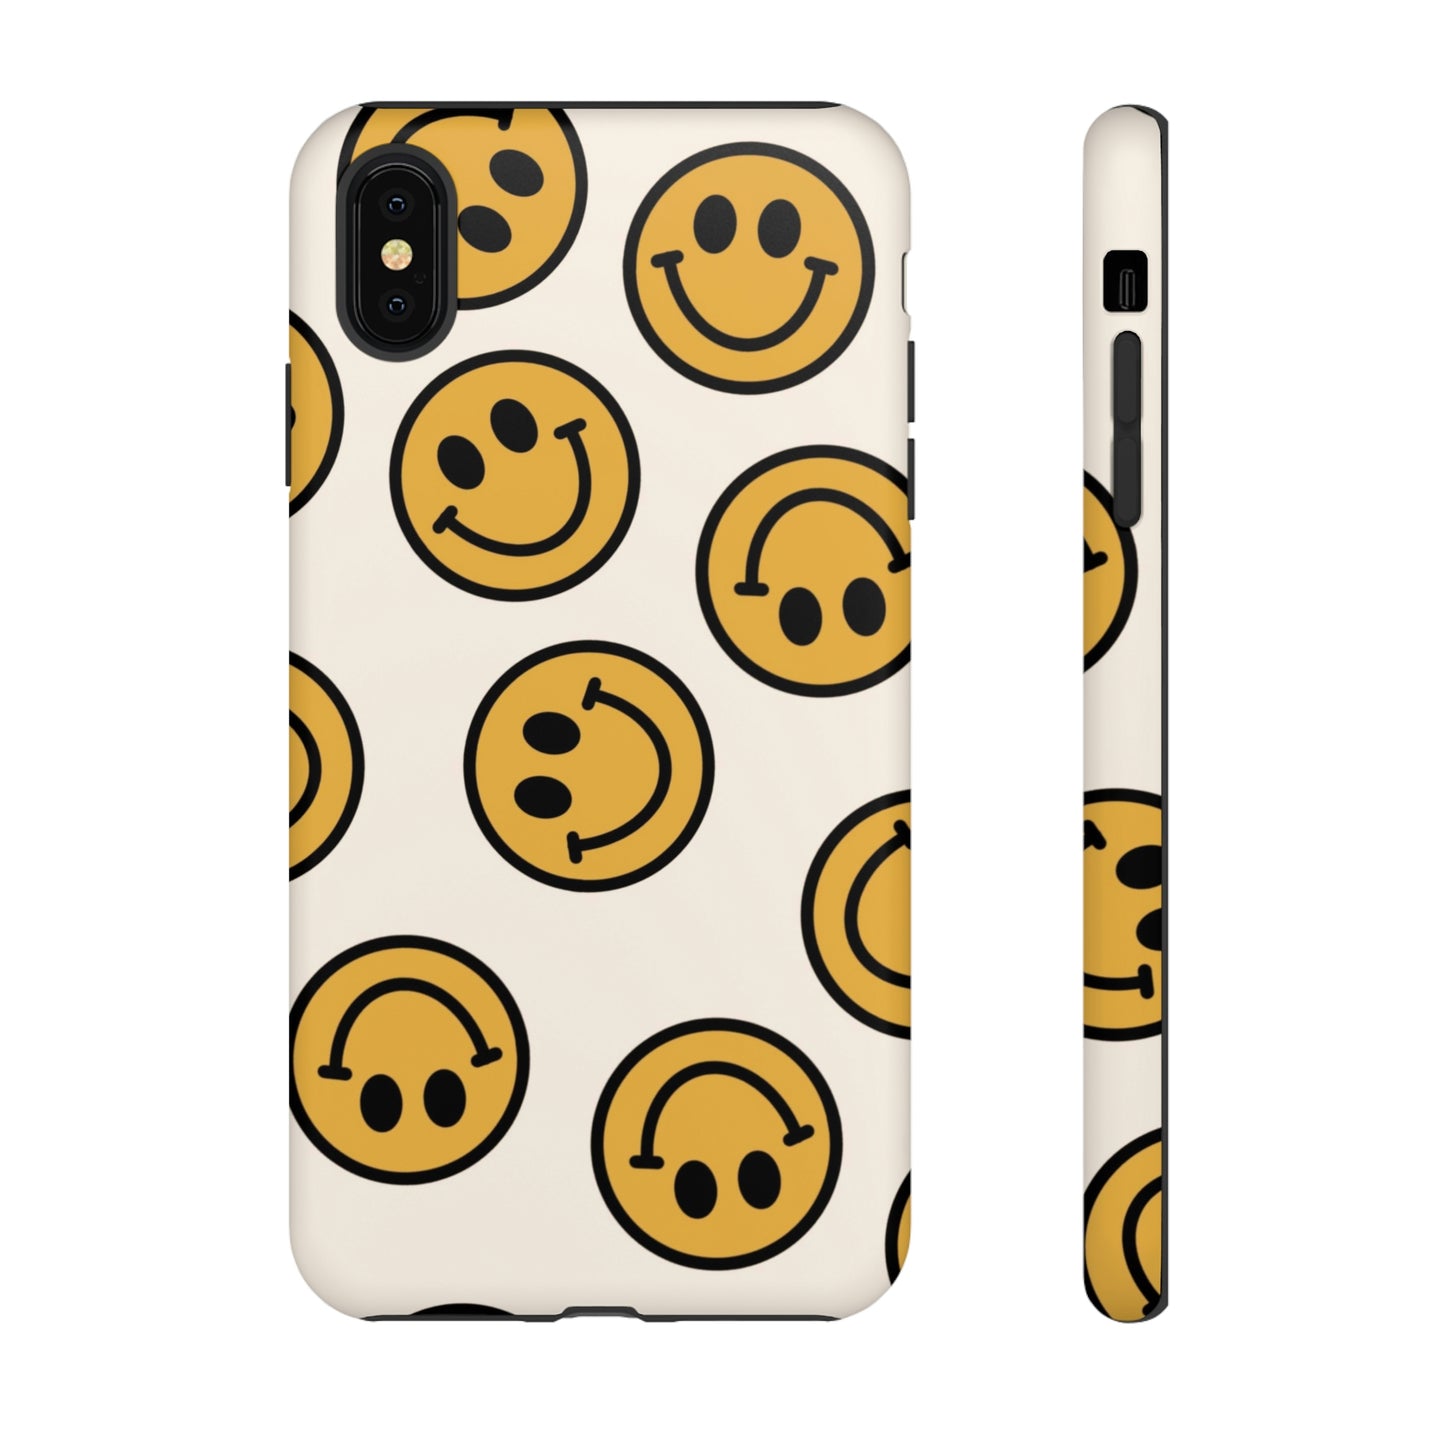 Smiley Face Tough Phone Cases